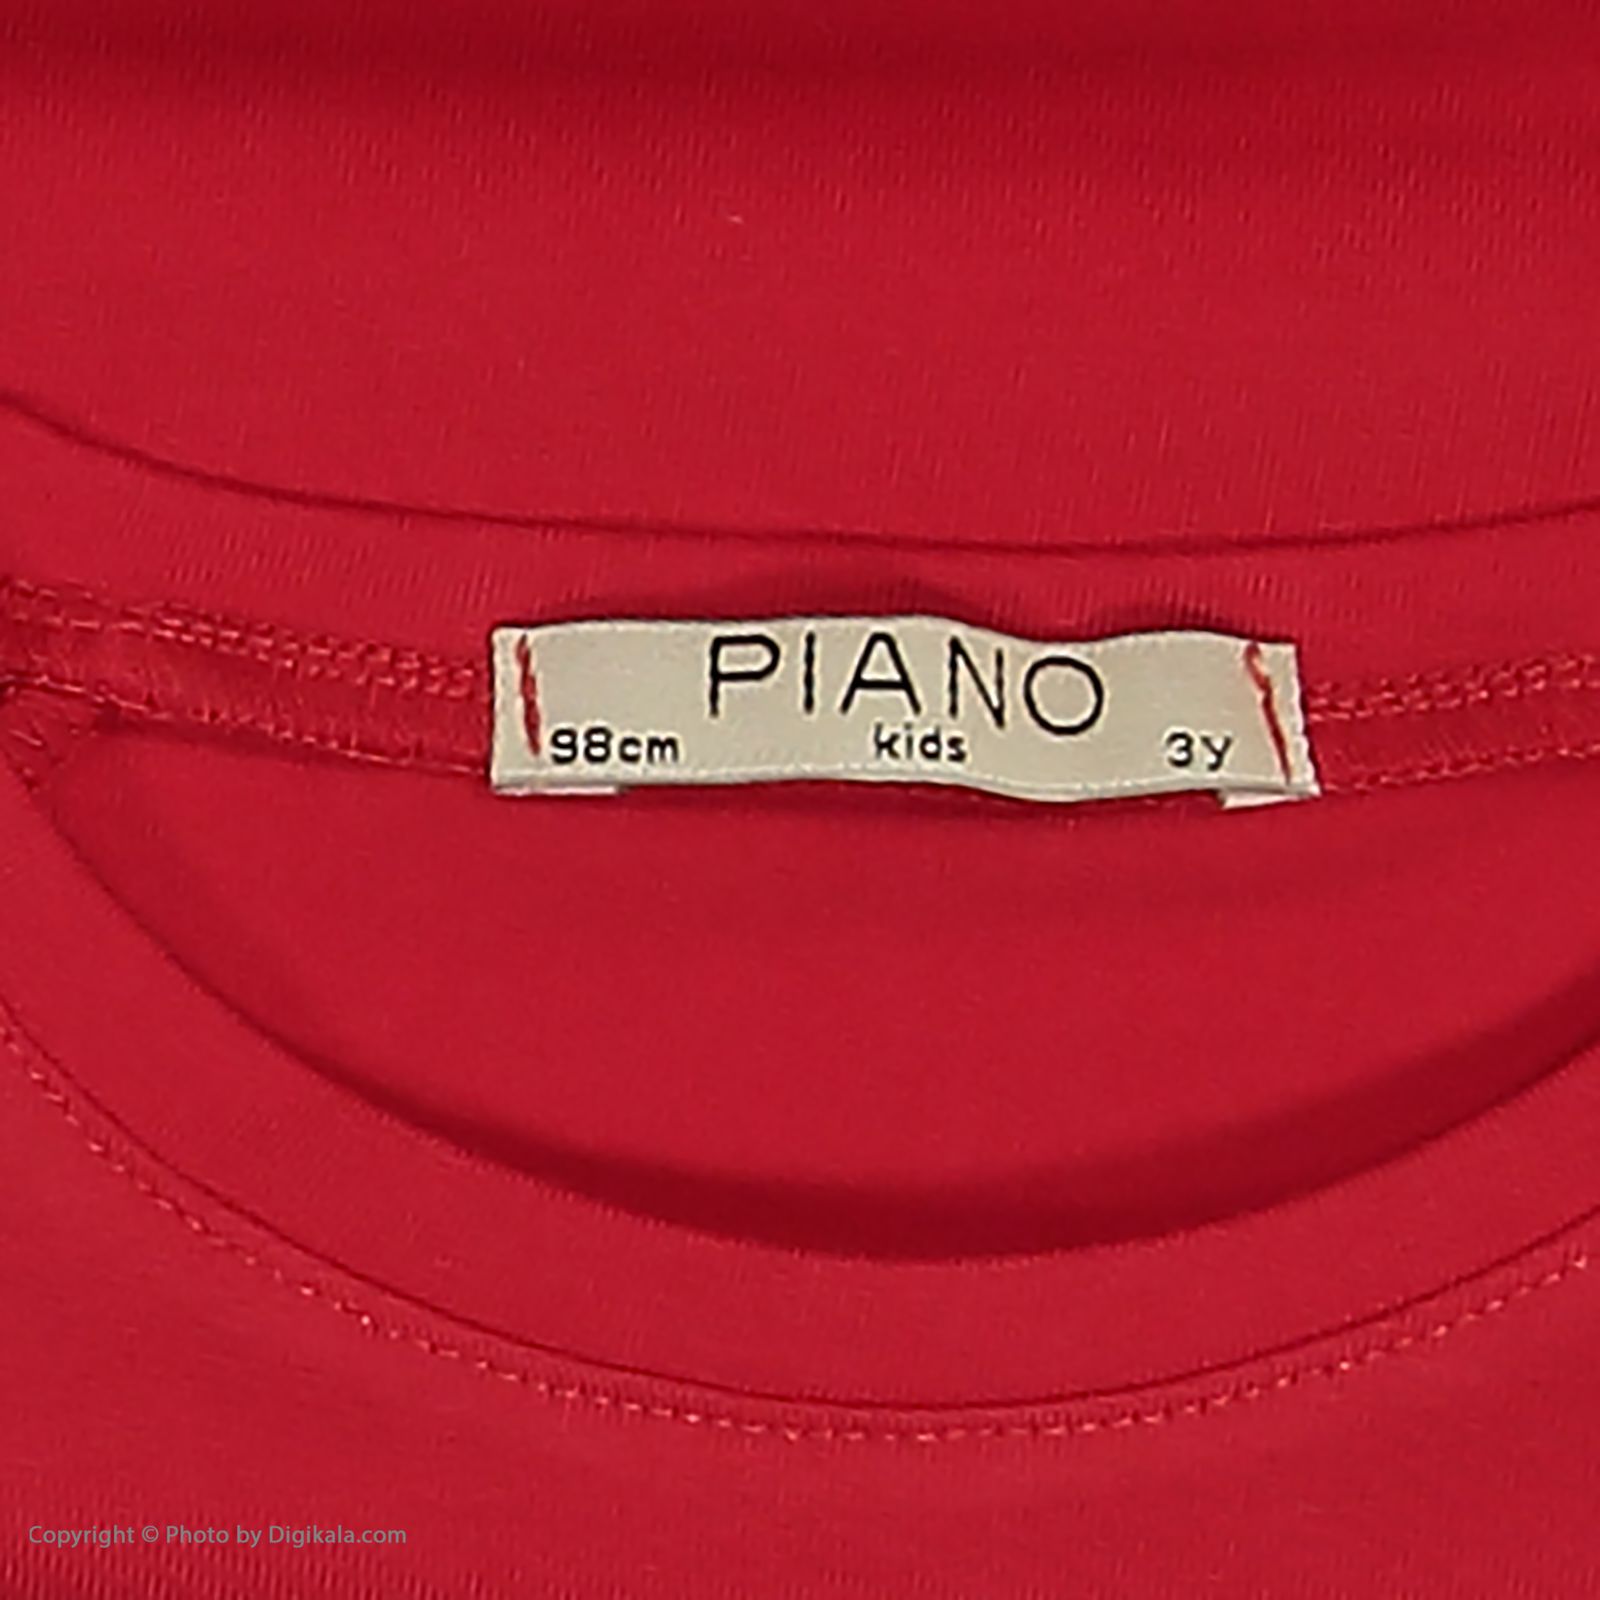 تی شرت دخترانه پیانو مدل 1833-72 -  - 5